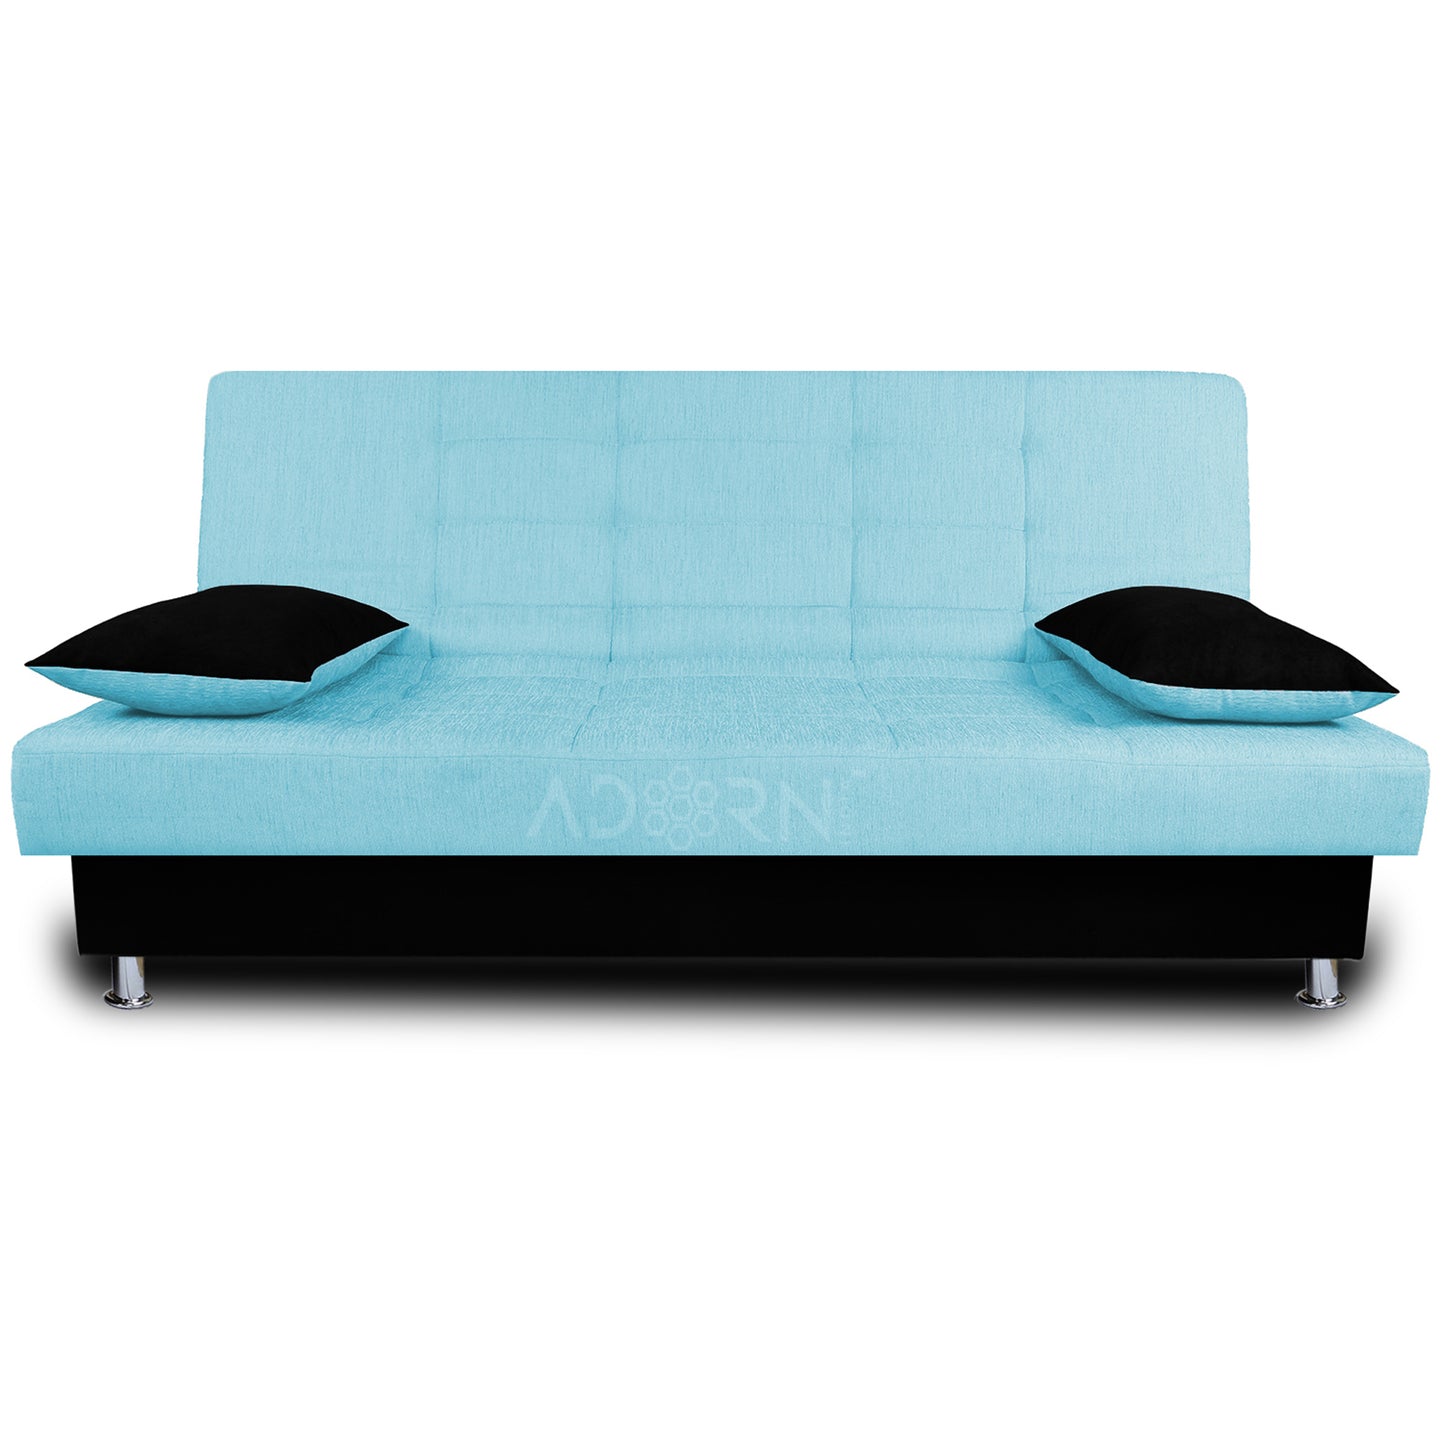 Adorn India Alyssum 3 Seater Sofa Cumbed (Sky Blue & Black)